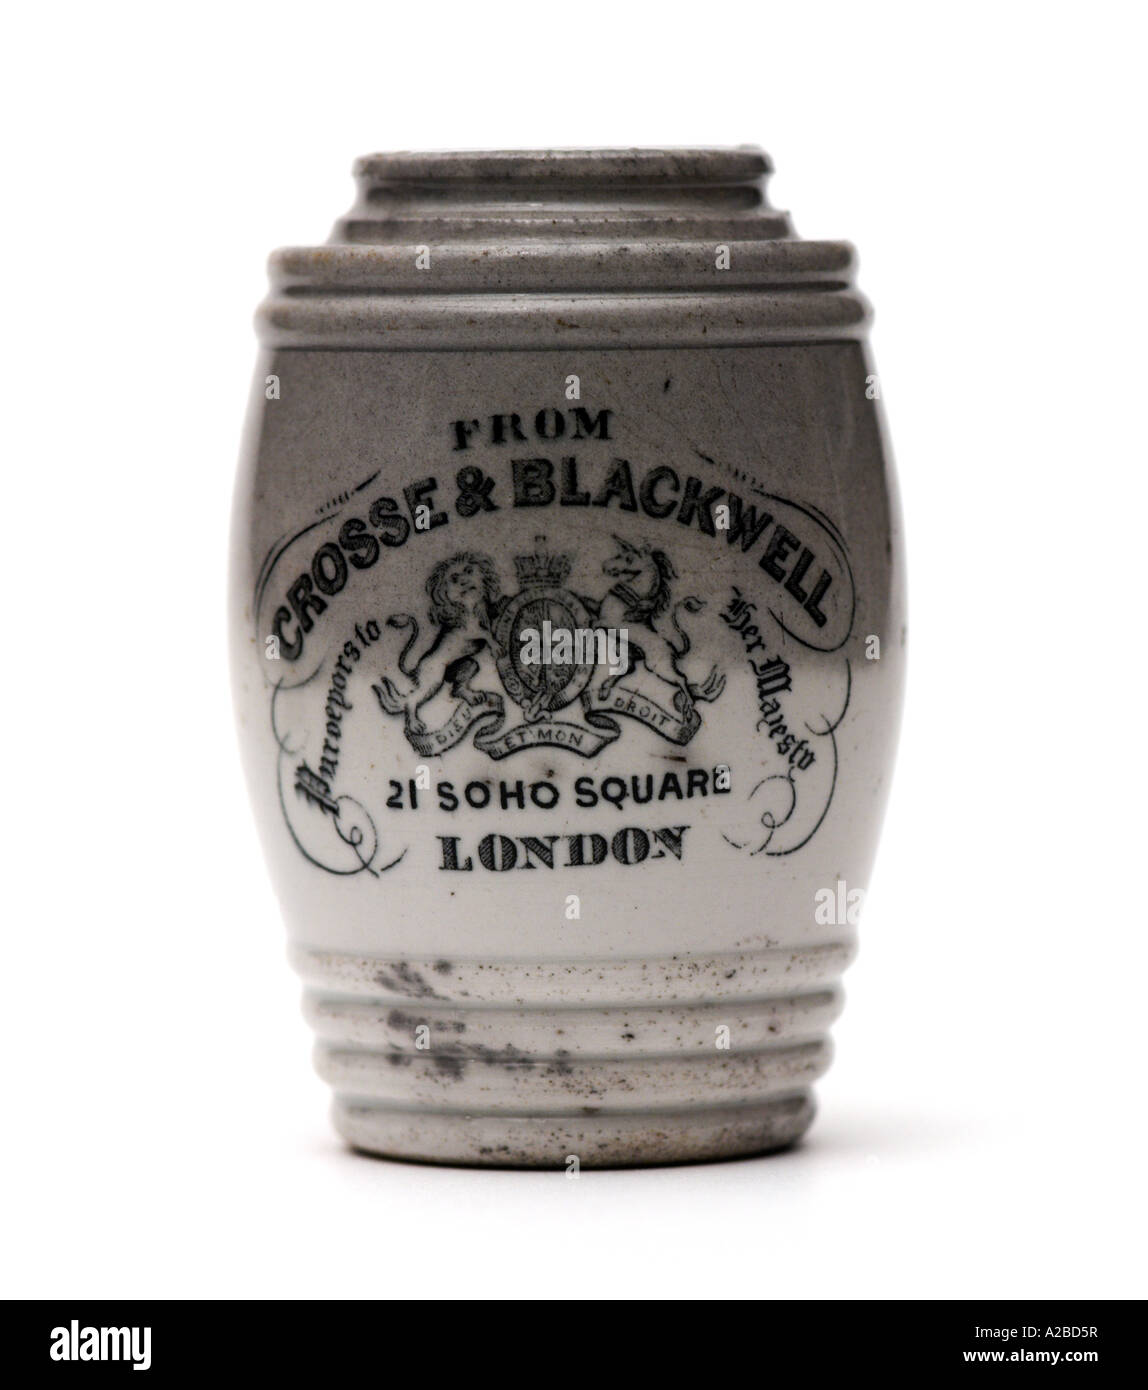 Crosse et Blackwell Pot début du xxe siècle Banque D'Images